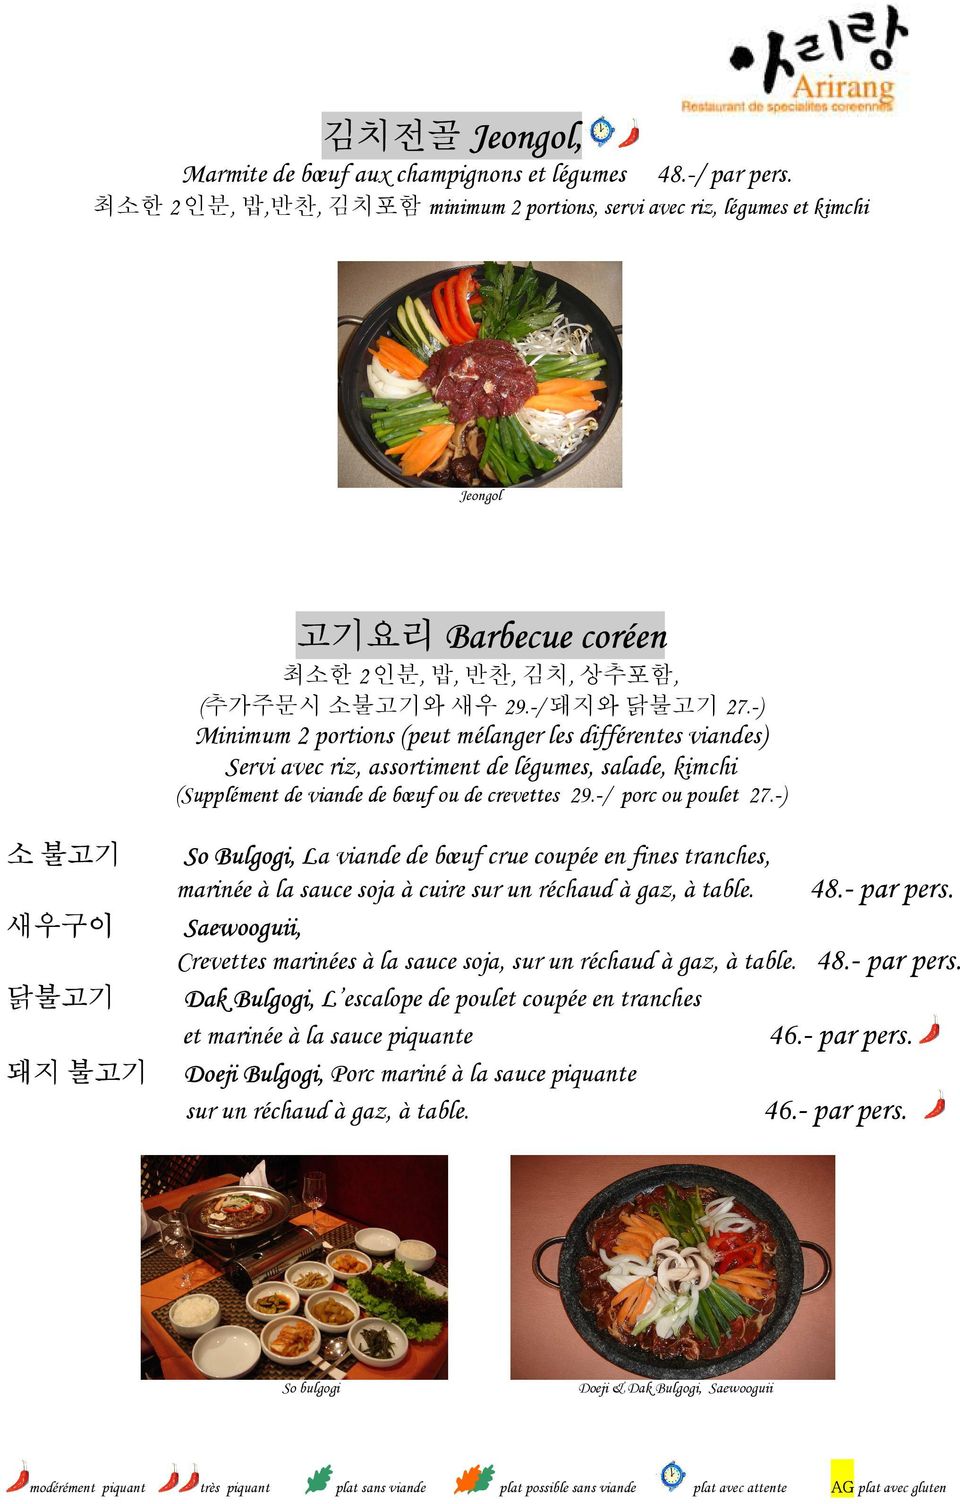 -) Minimum 2 portions (peut mélanger les différentes viandes) Servi avec riz, assortiment de légumes, salade, kimchi (Supplément de viande de bœuf ou de crevettes 29.-/ porc ou poulet 27.